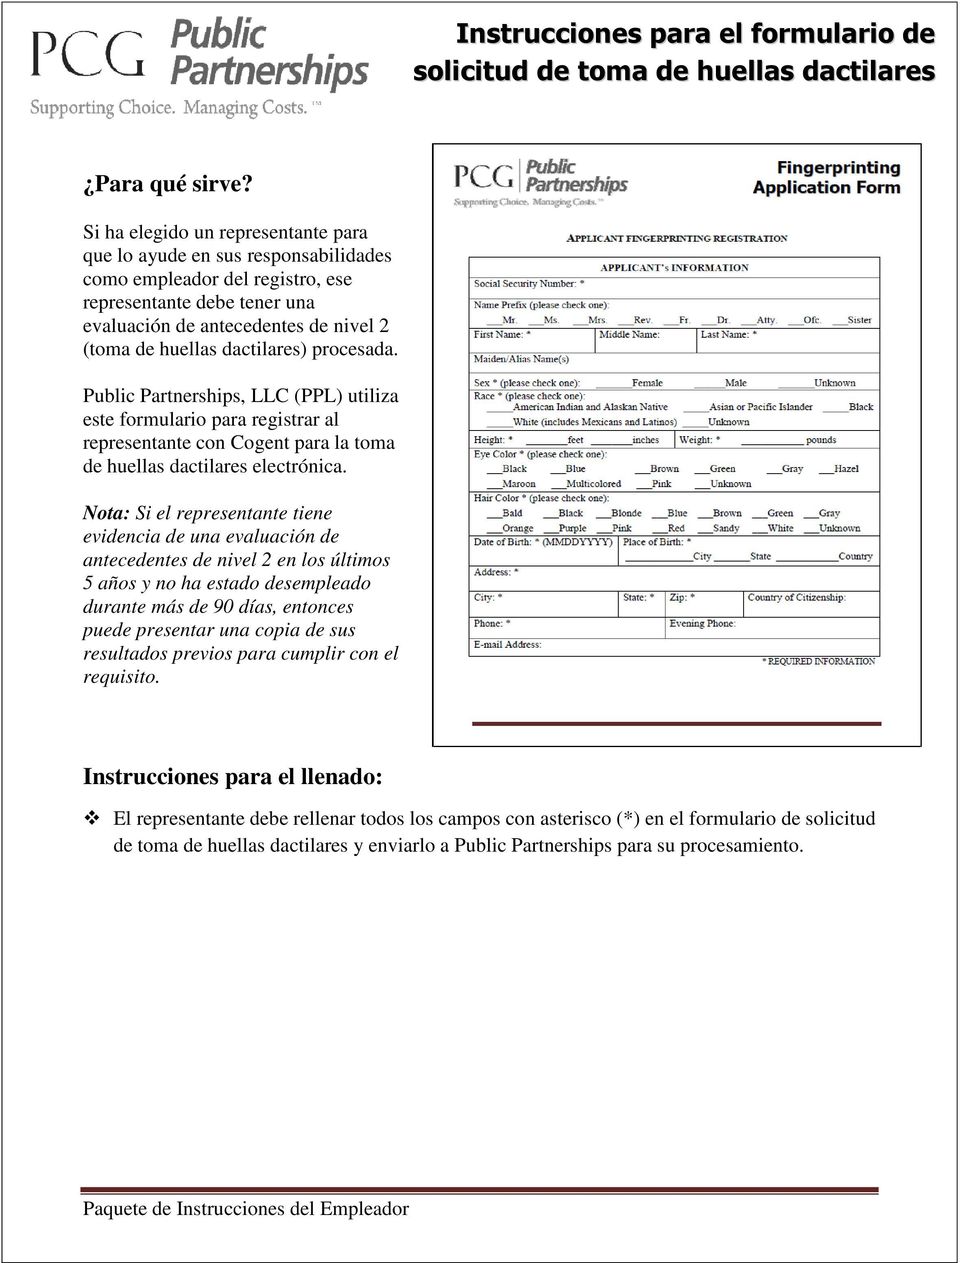 Public Partnerships, LLC (PPL) utiliza este formulario para registrar al representante con Cogent para la toma de huellas dactilares electrónica.